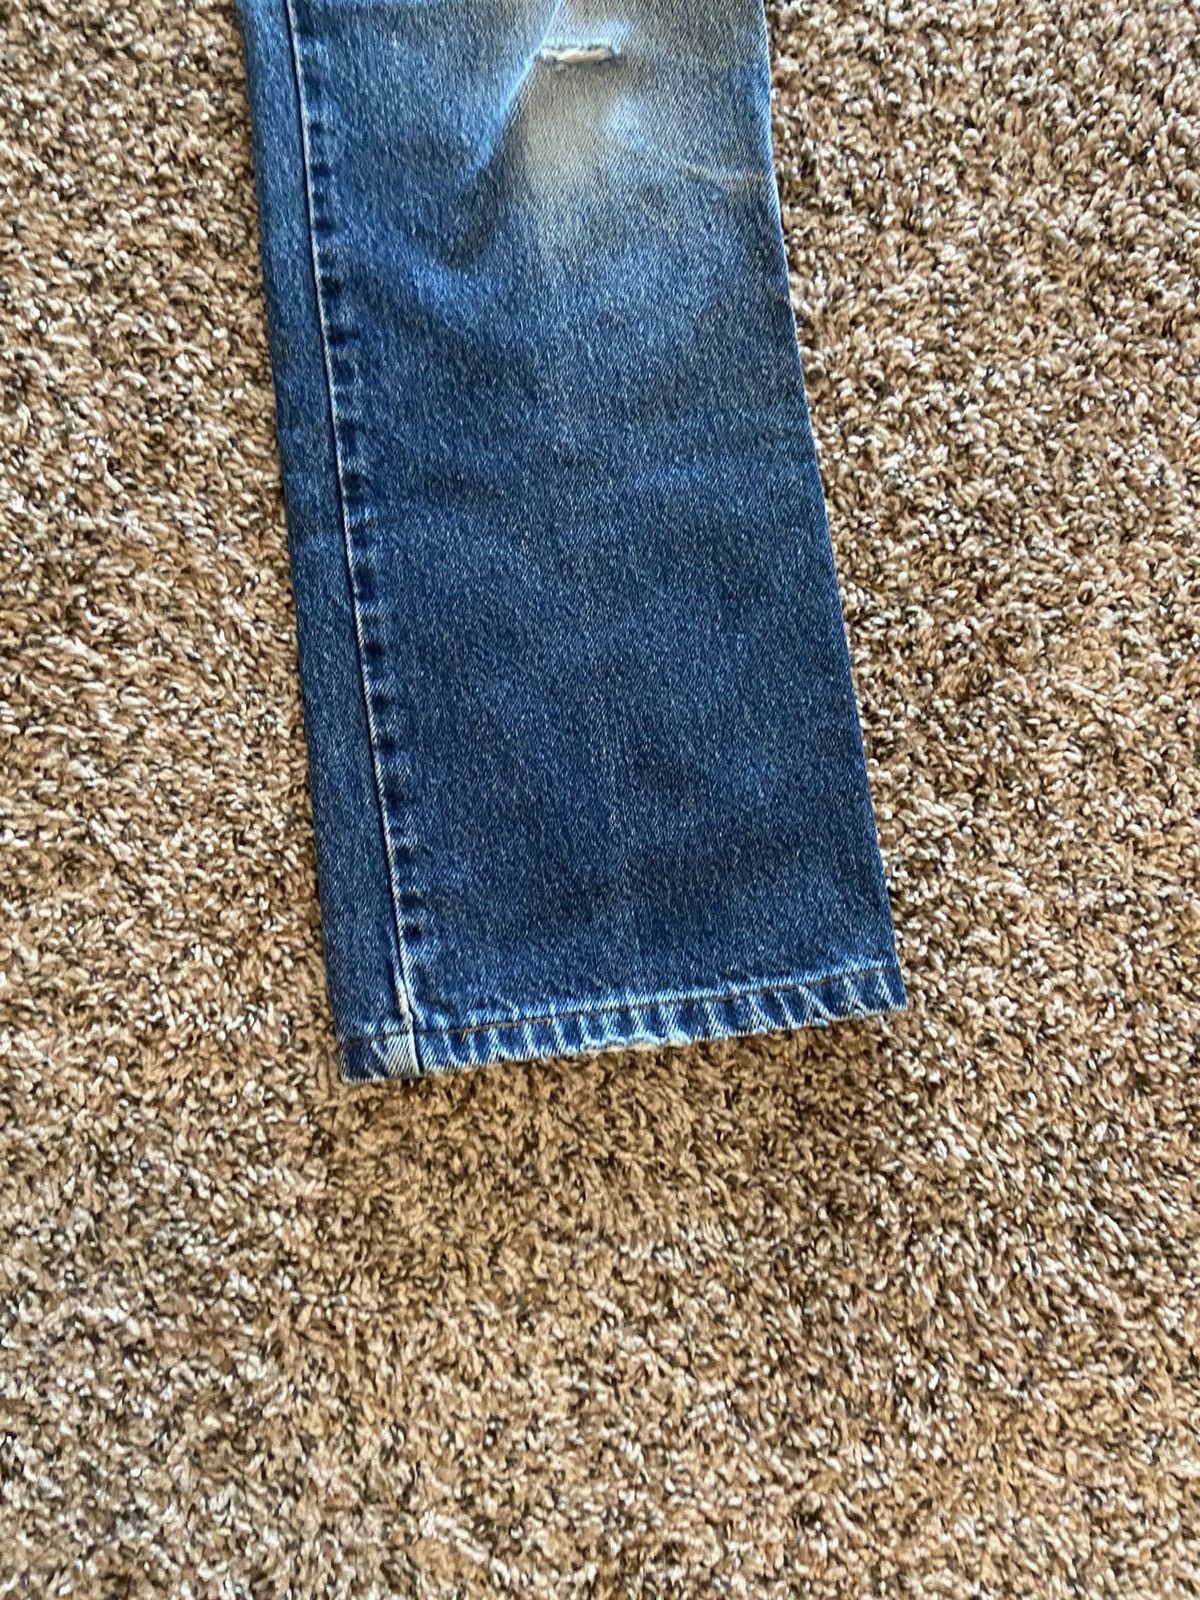 Vintage Vintage Levi’s 505 Distressed Denim Jeans Size US 30 / EU 46 - 6 Thumbnail